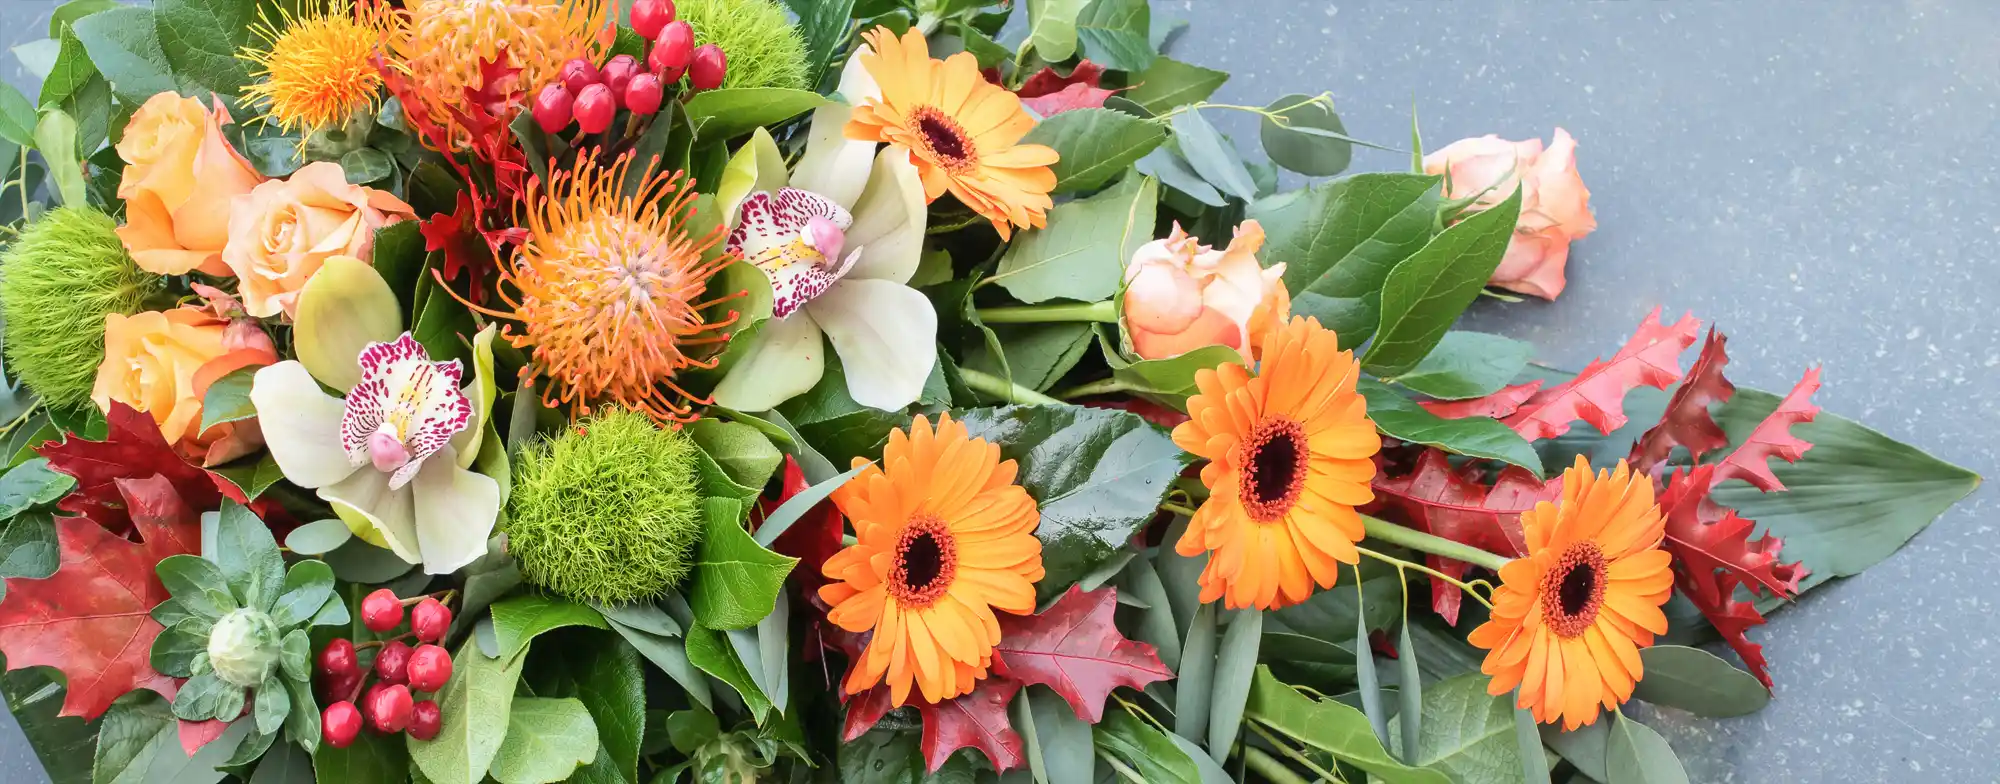 orange funeral flowers